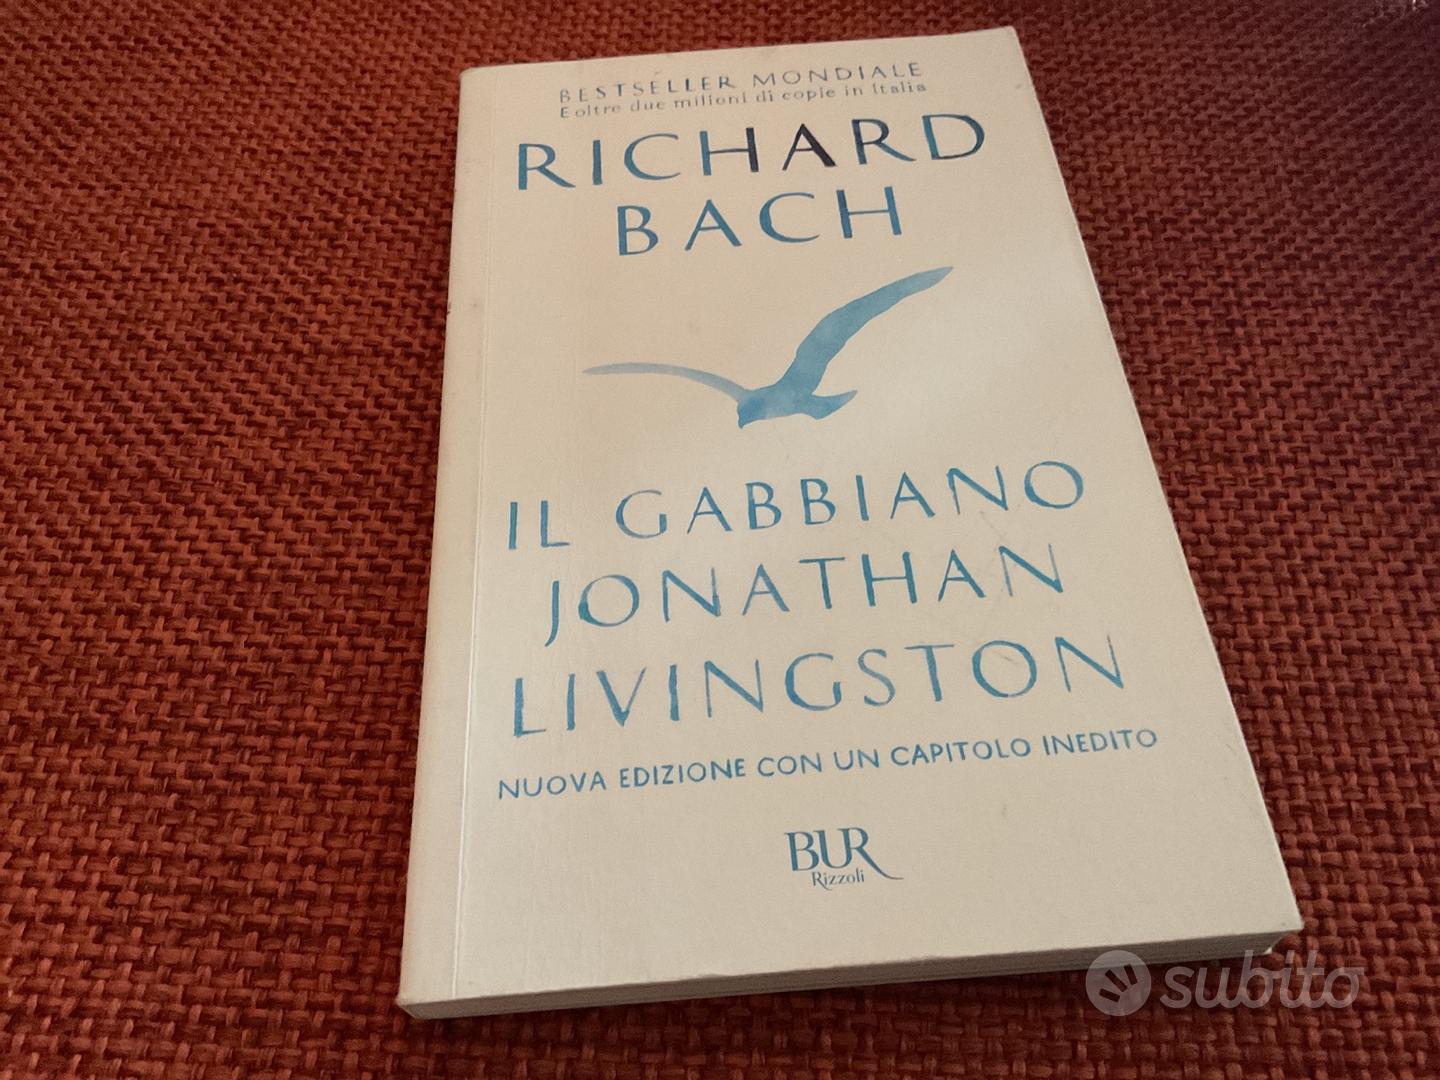 Il Gabbiano Jonathan Livingston - Libri e Riviste In vendita a Ancona